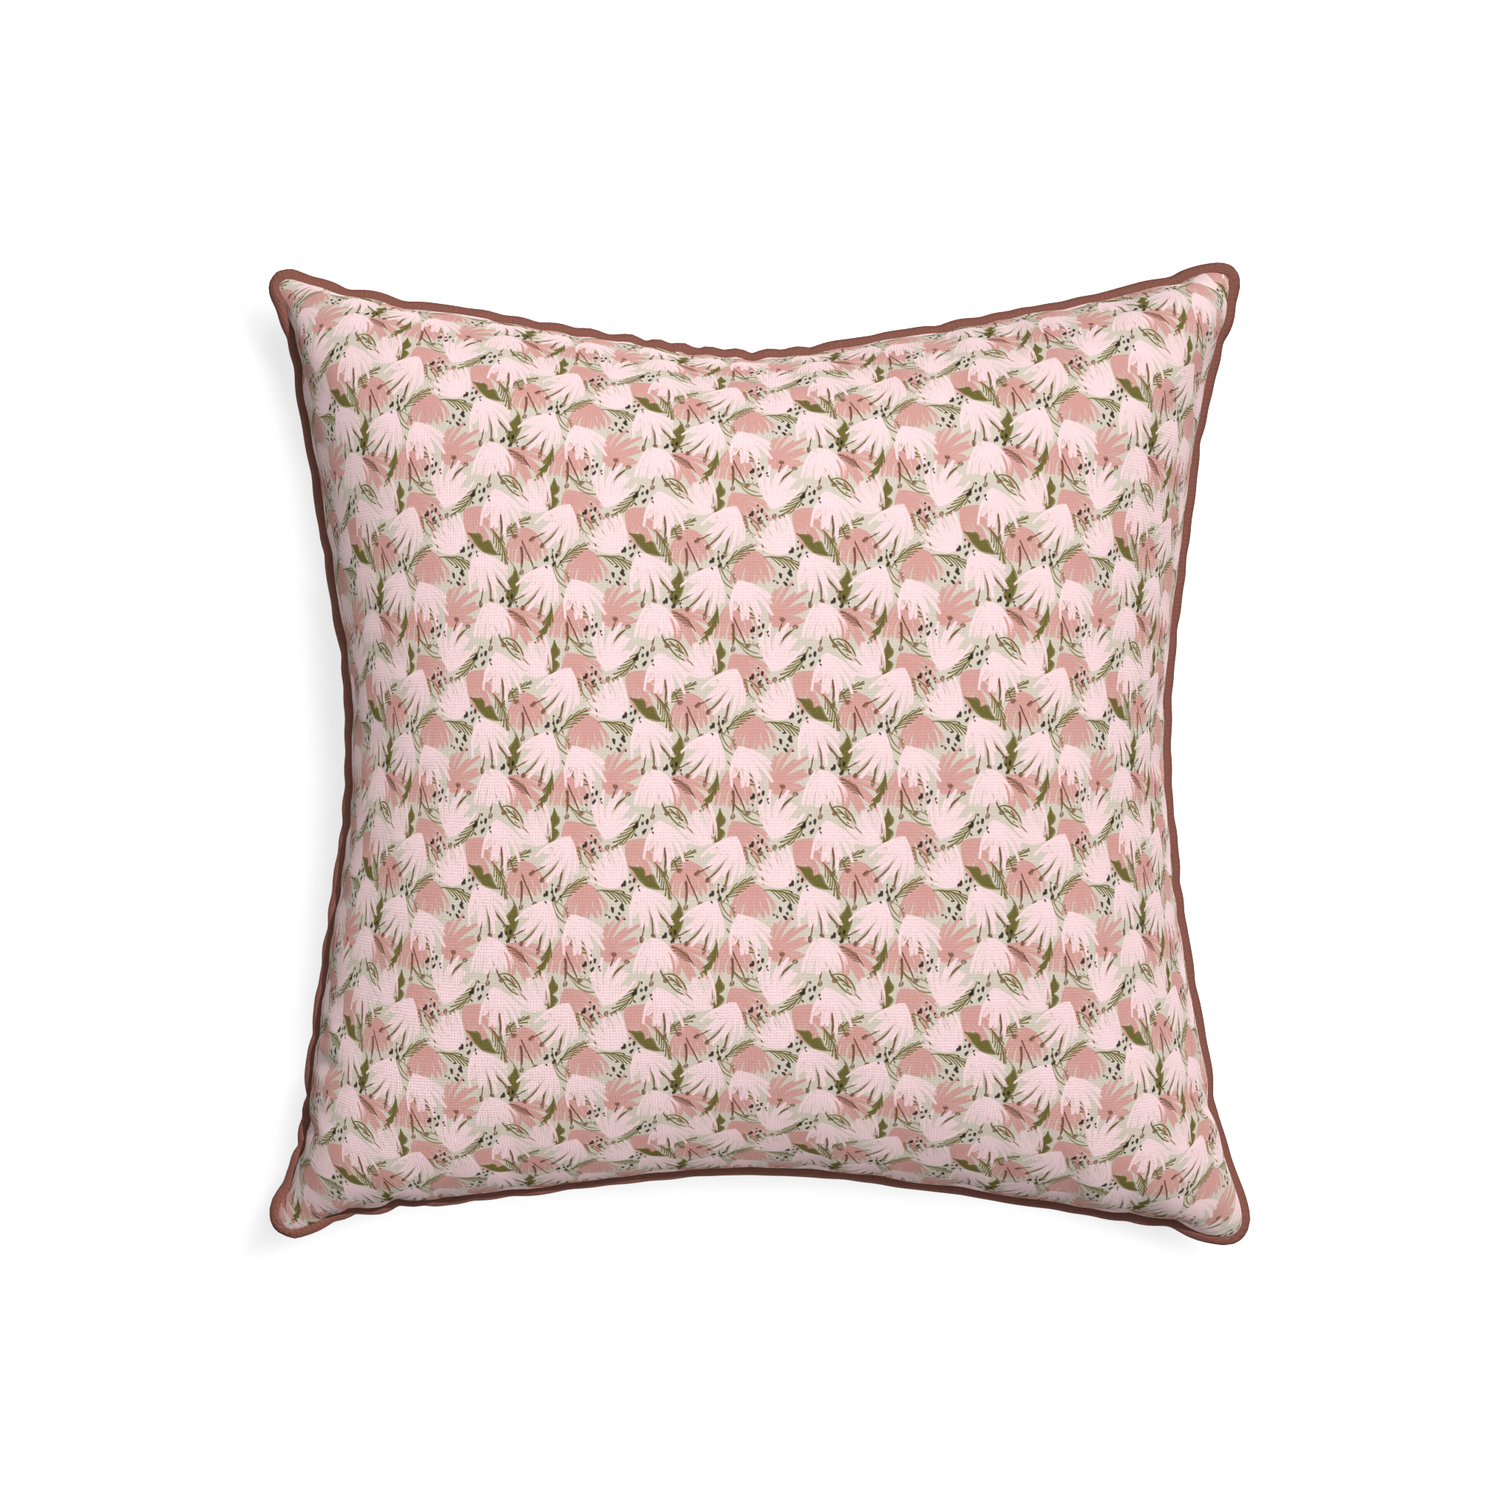 Eden Square Toss Pillow, Modern Decorative Toss Pillows